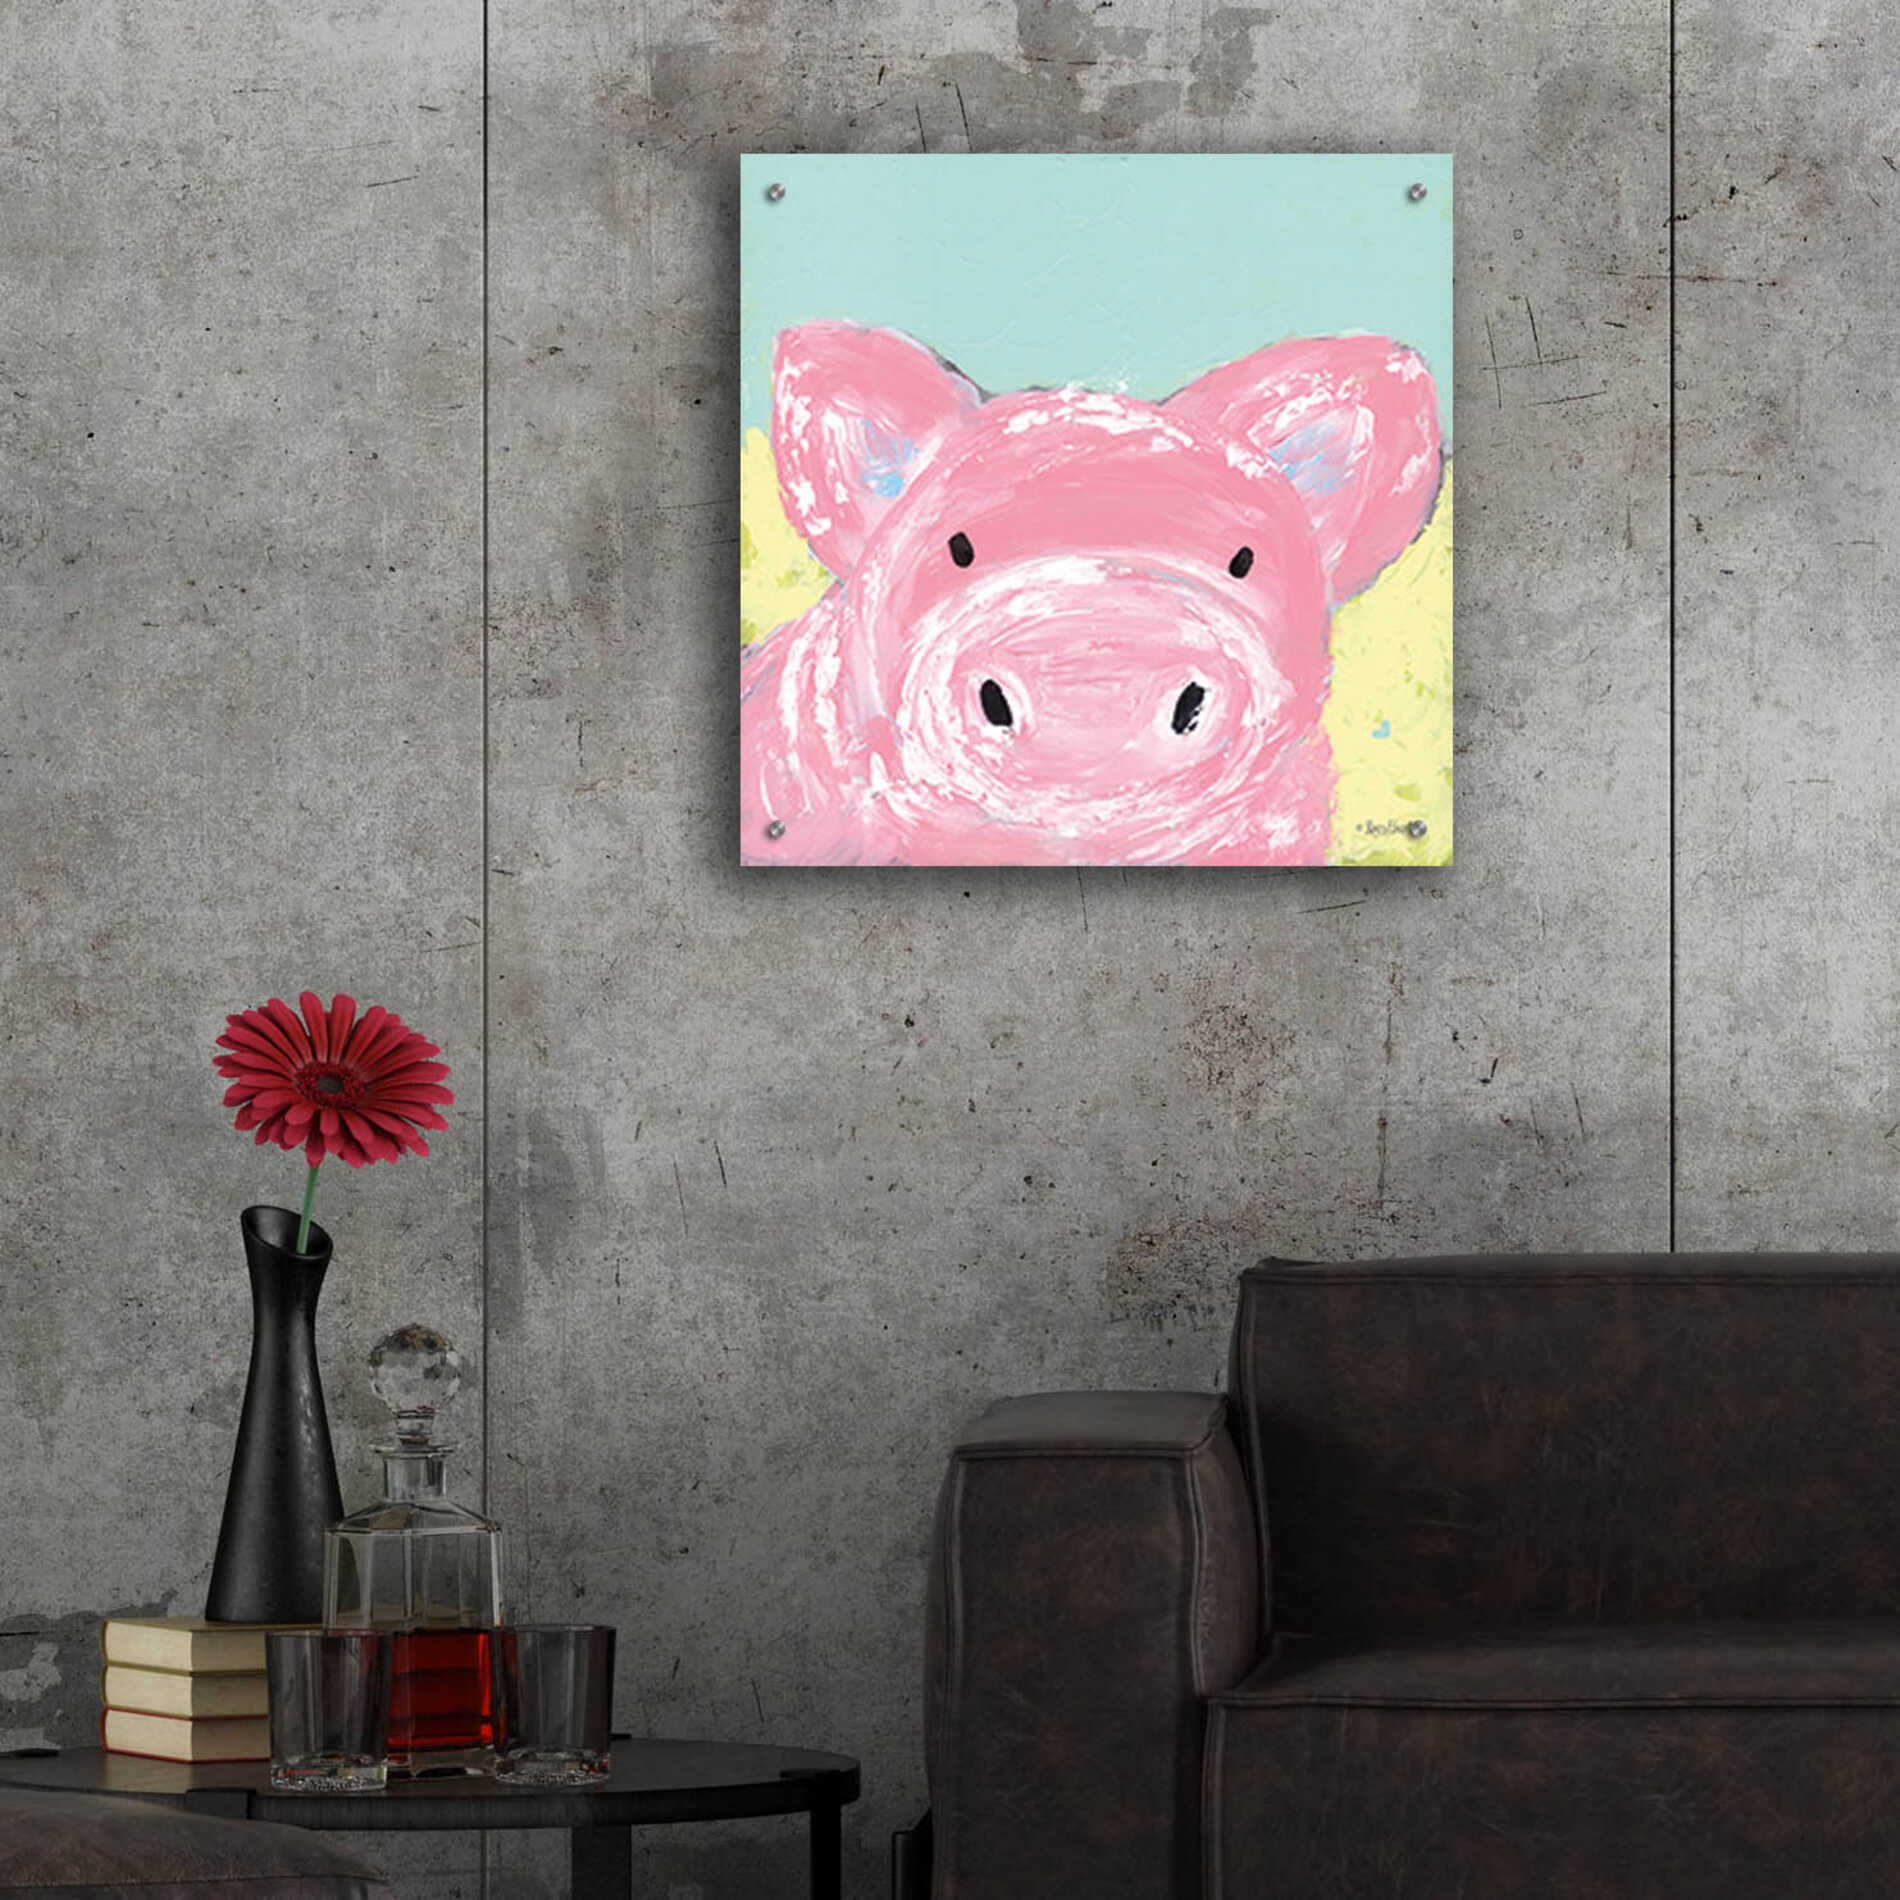 Epic Art 'Oink' by Roey Ebert, Acrylic Glass Wall Art,24x24